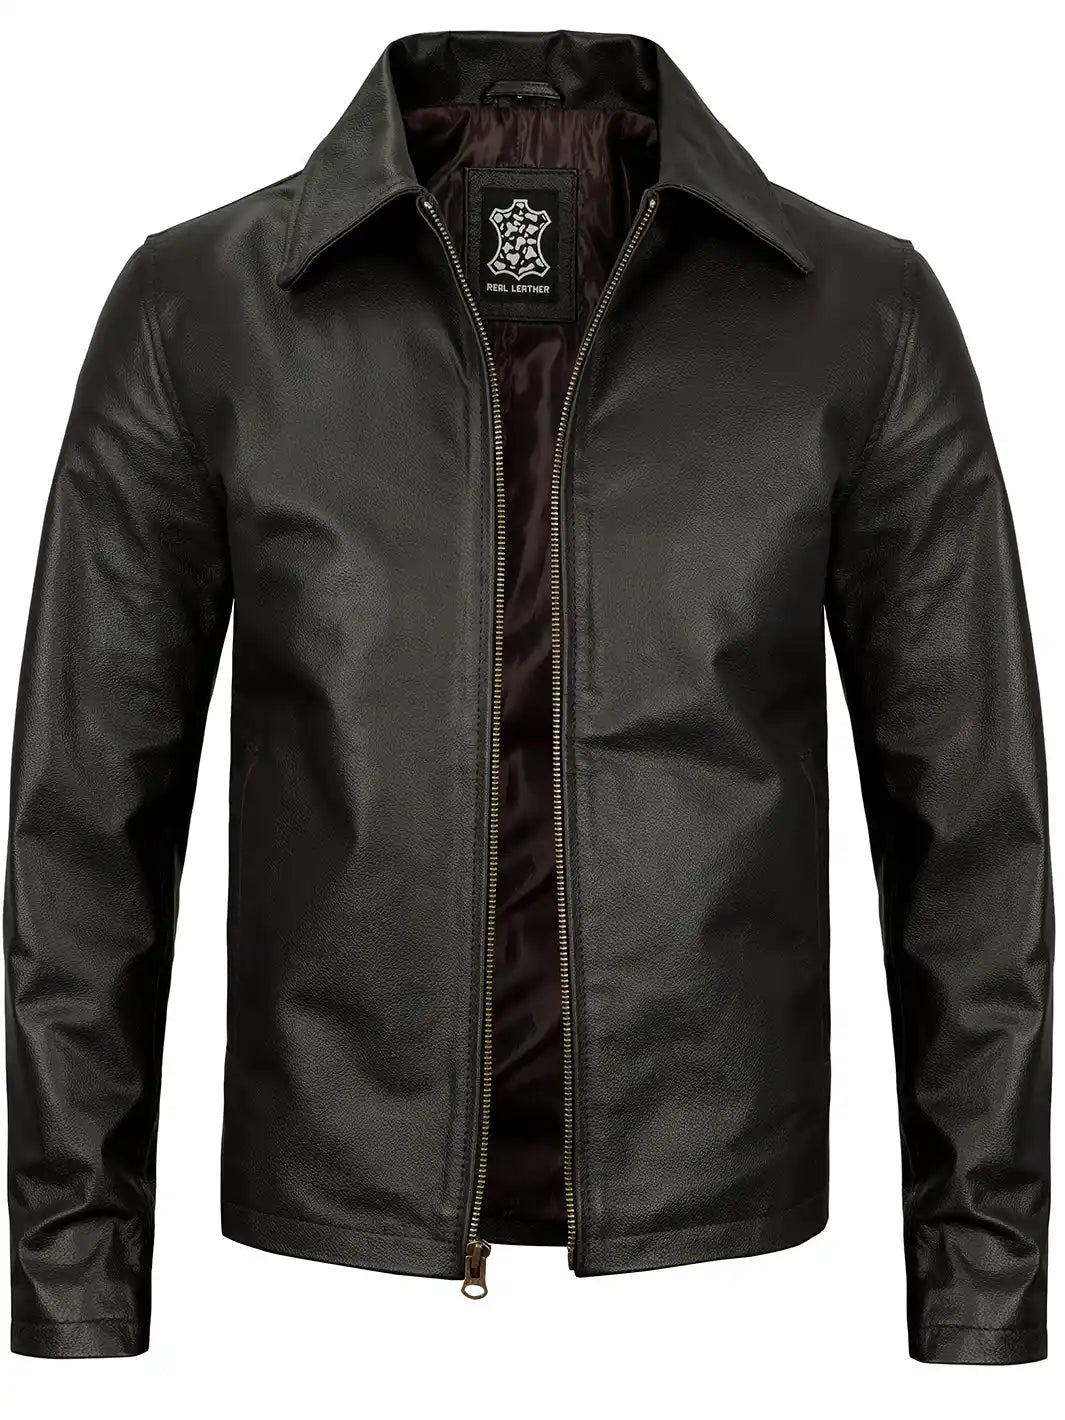 Mens dark brown cowhide leather jacket